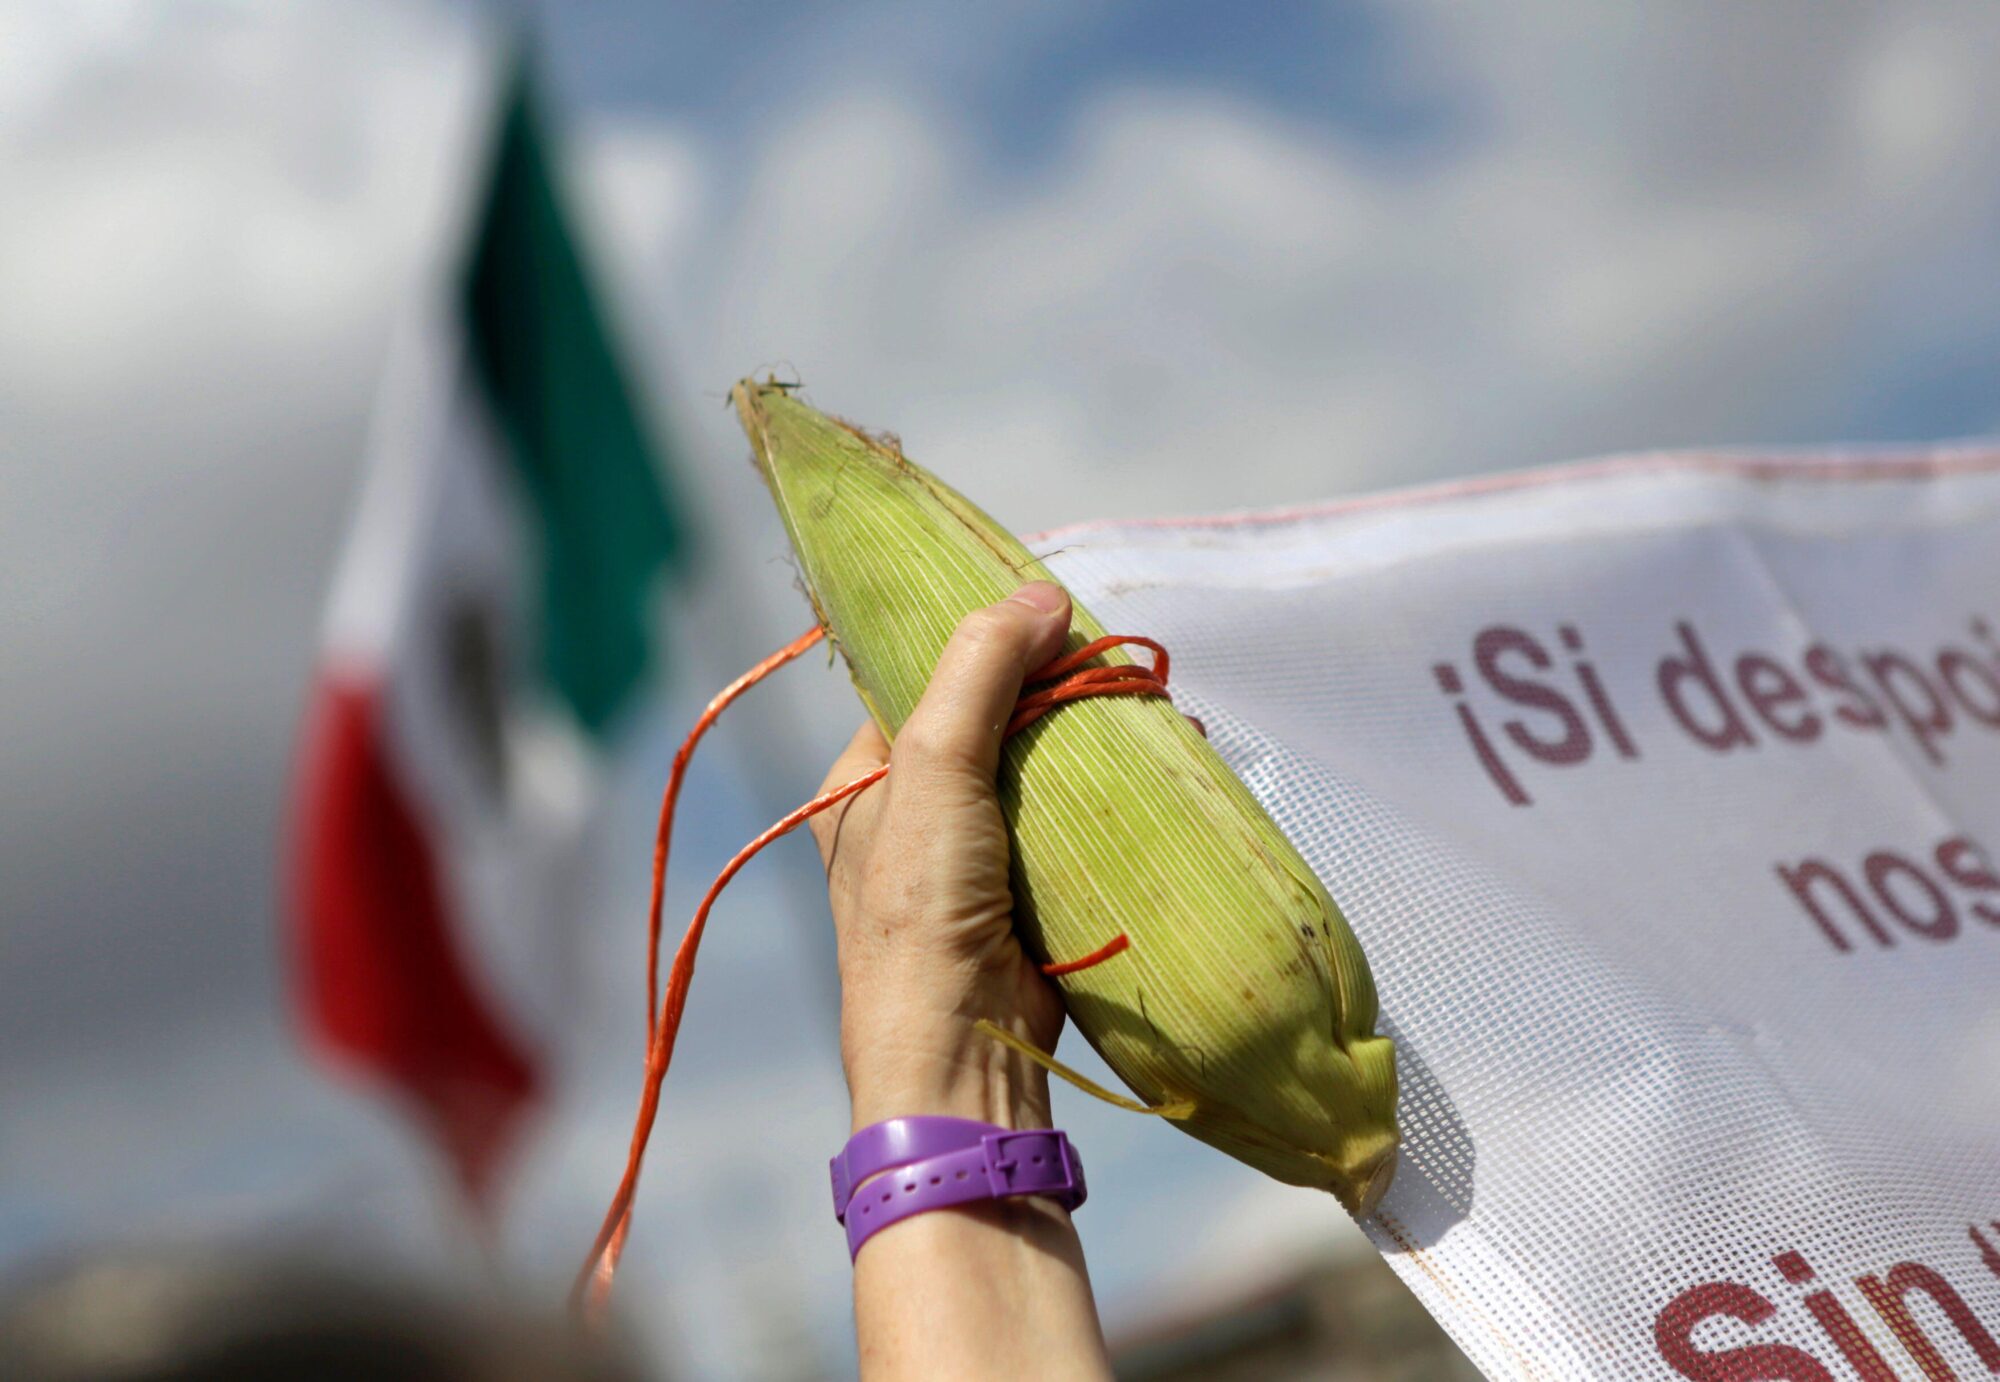 Una mano sosteniendo una mazorca de maíz y una bandera de México de fondo